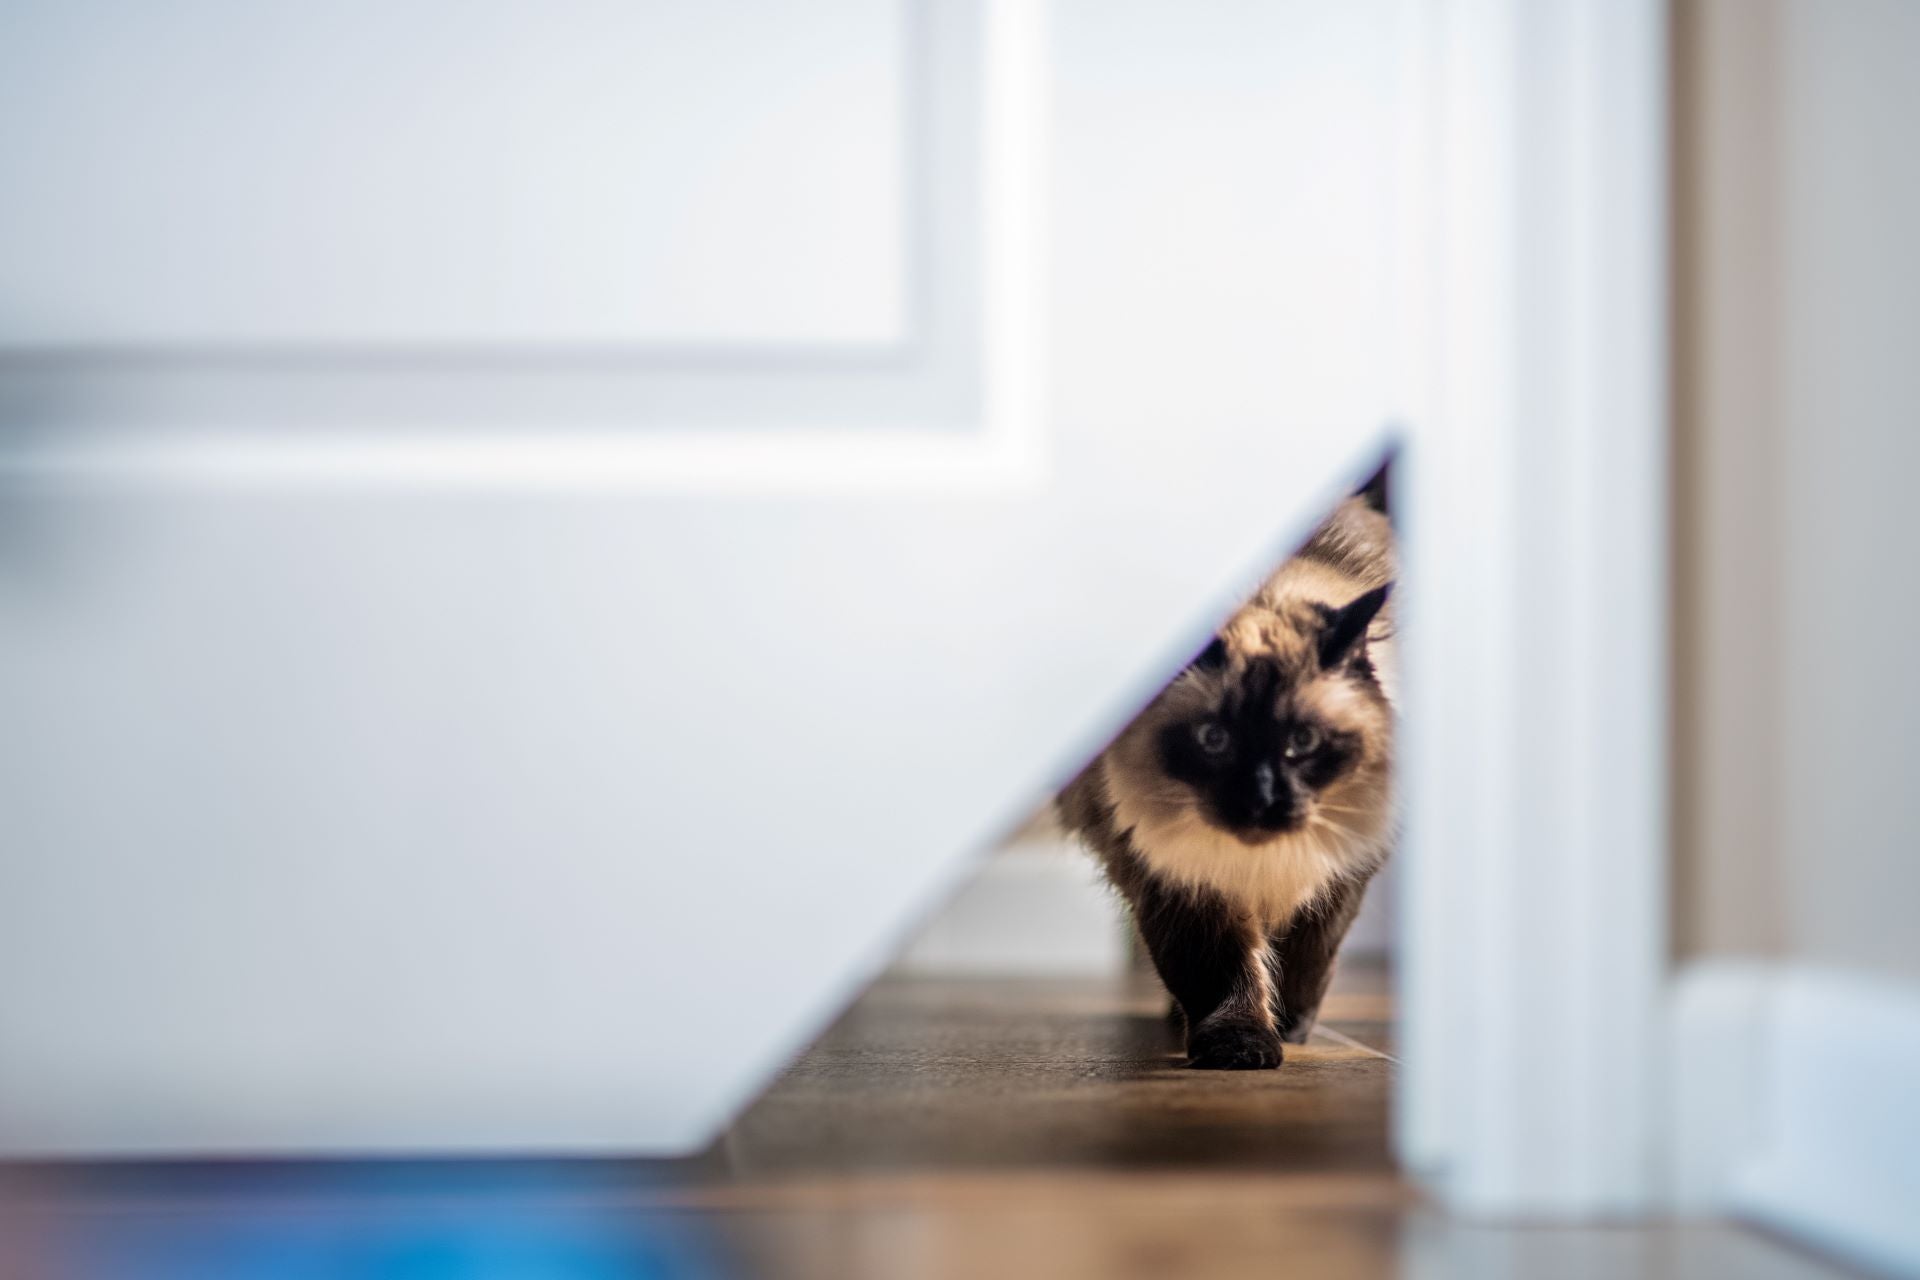 Load video: Kitty Korner cat door